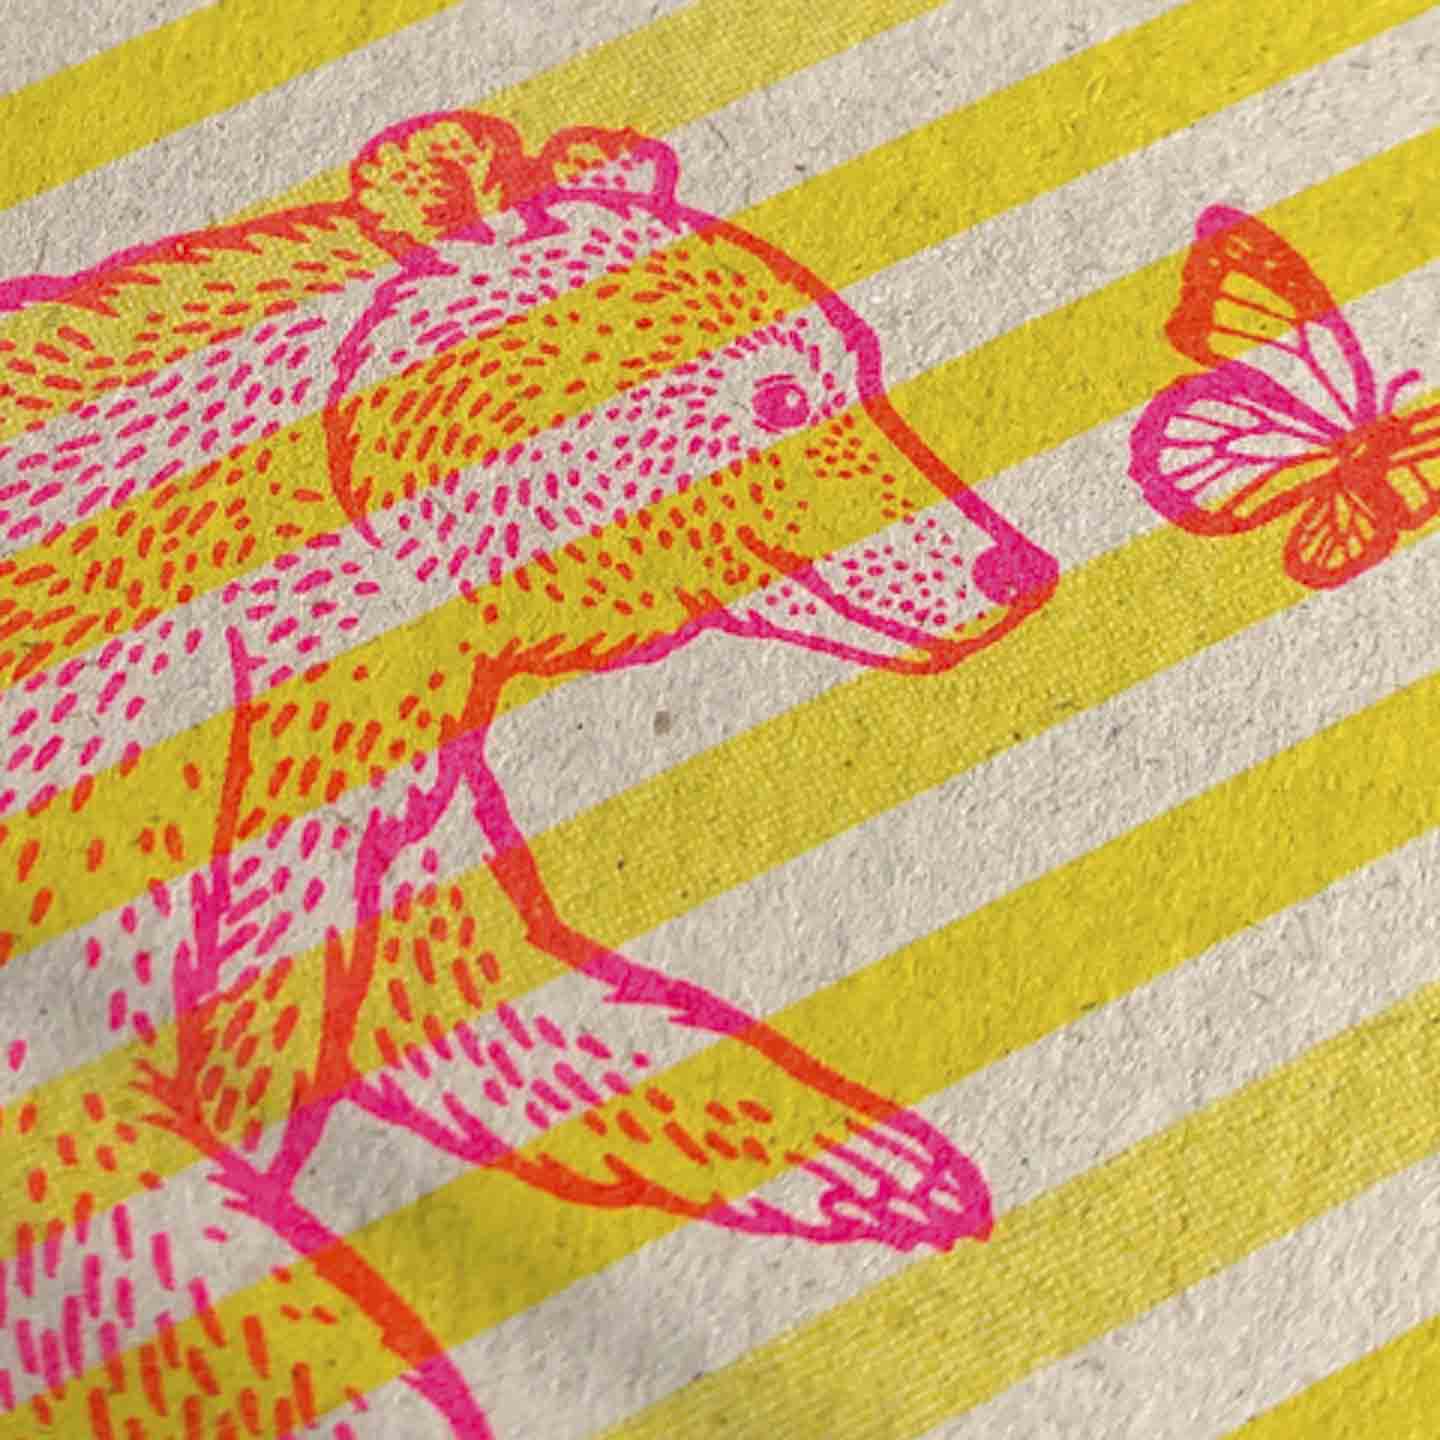 Bär und Schmetterling in Pink auf Risographie-Postkarte, Detailansicht mit grober PapierkörnungTogethery Karte Postkarte Risographie Riso Druck Bär auf Einrad Schmetterling